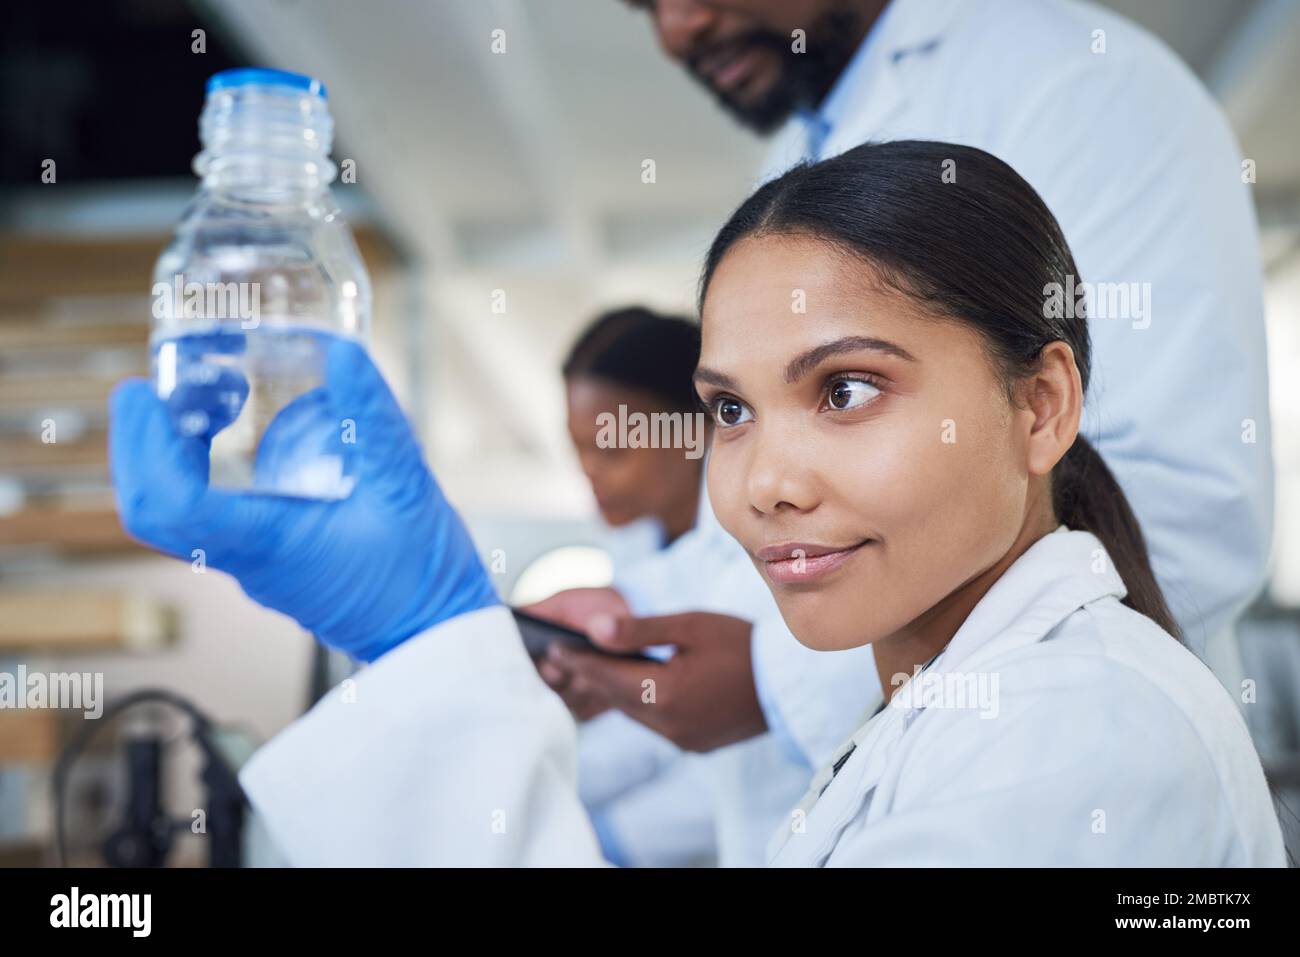 Ce n'est pas un miracle, sa pure science non filtrée. une jeune scientifique effectuant des recherches avec son équipe dans un laboratoire. Banque D'Images